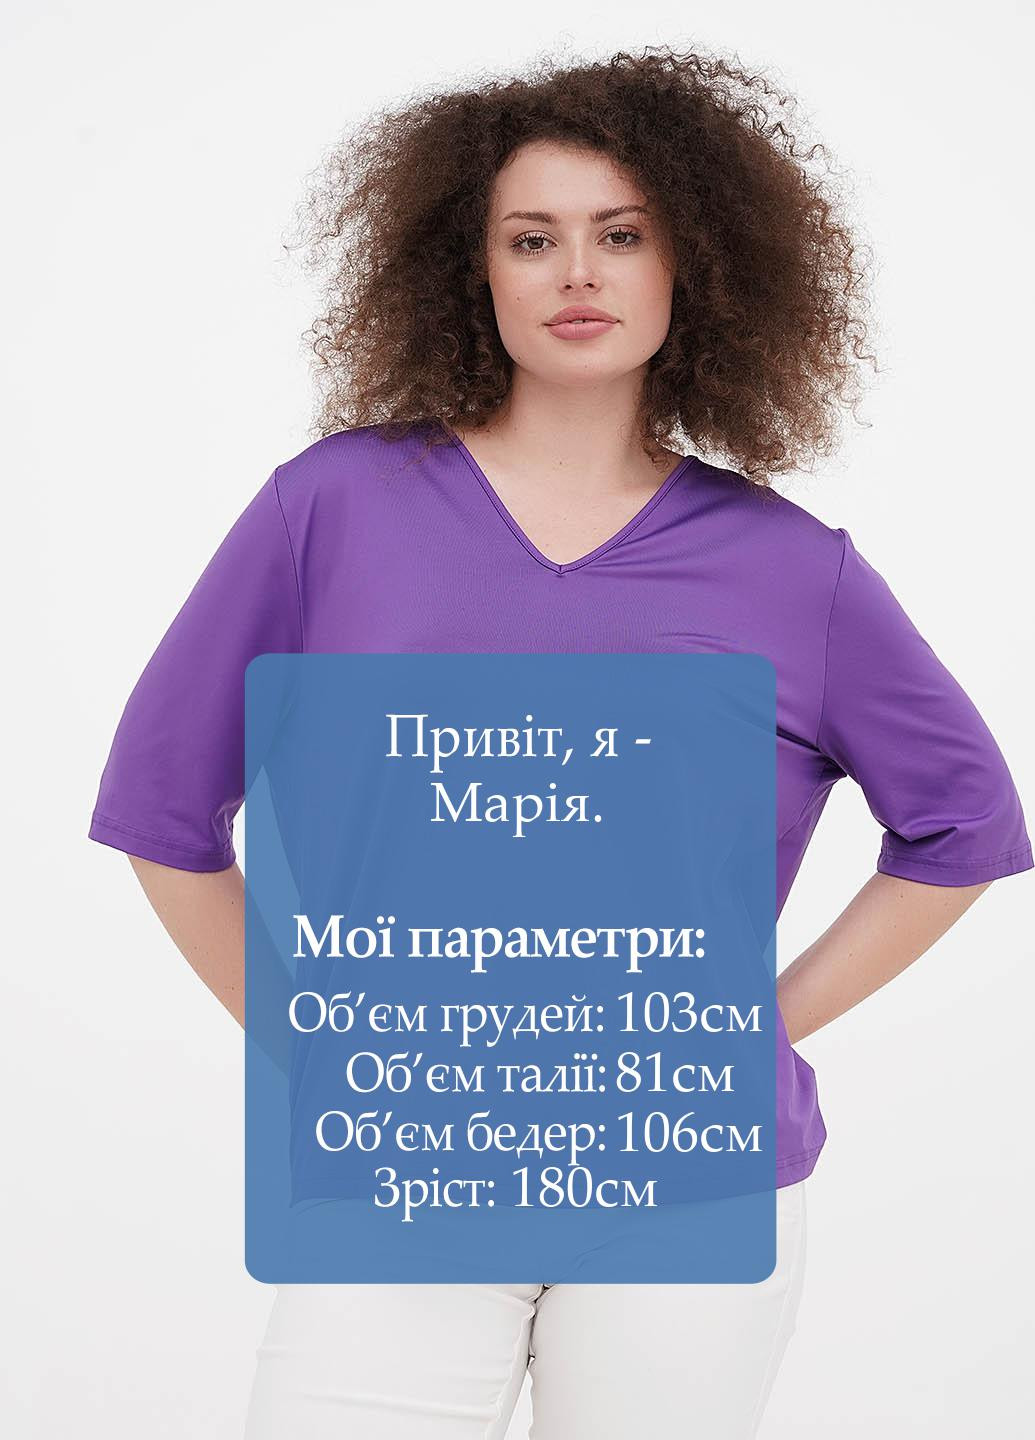 Фиолетовая летняя футболка Minus